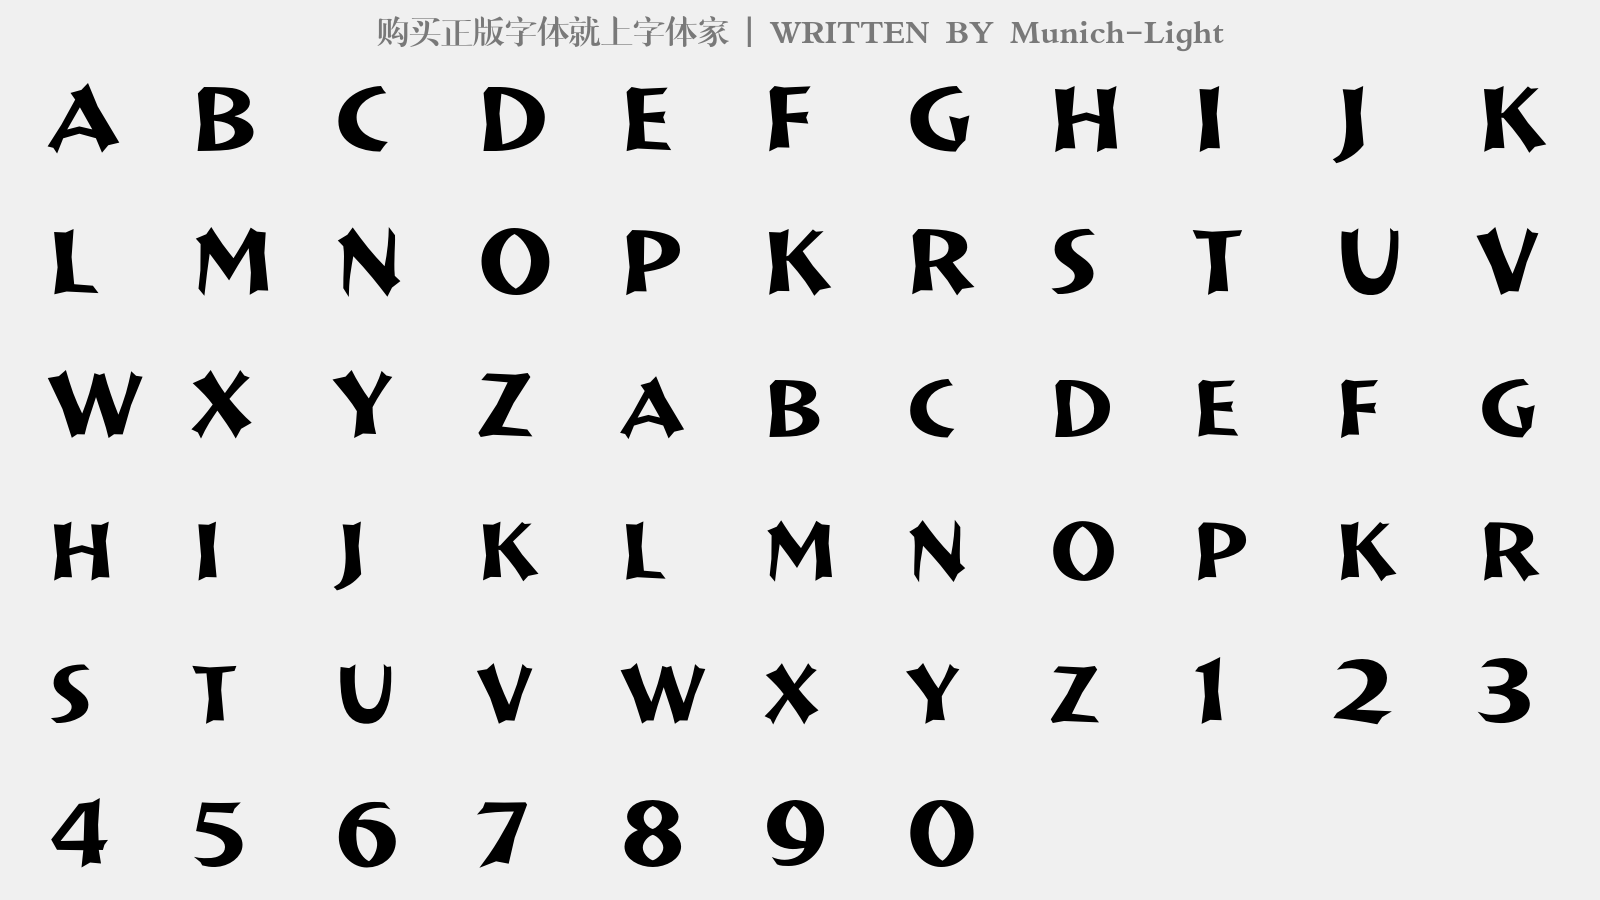 Munich-Light - 大写字母/小写字母/数字